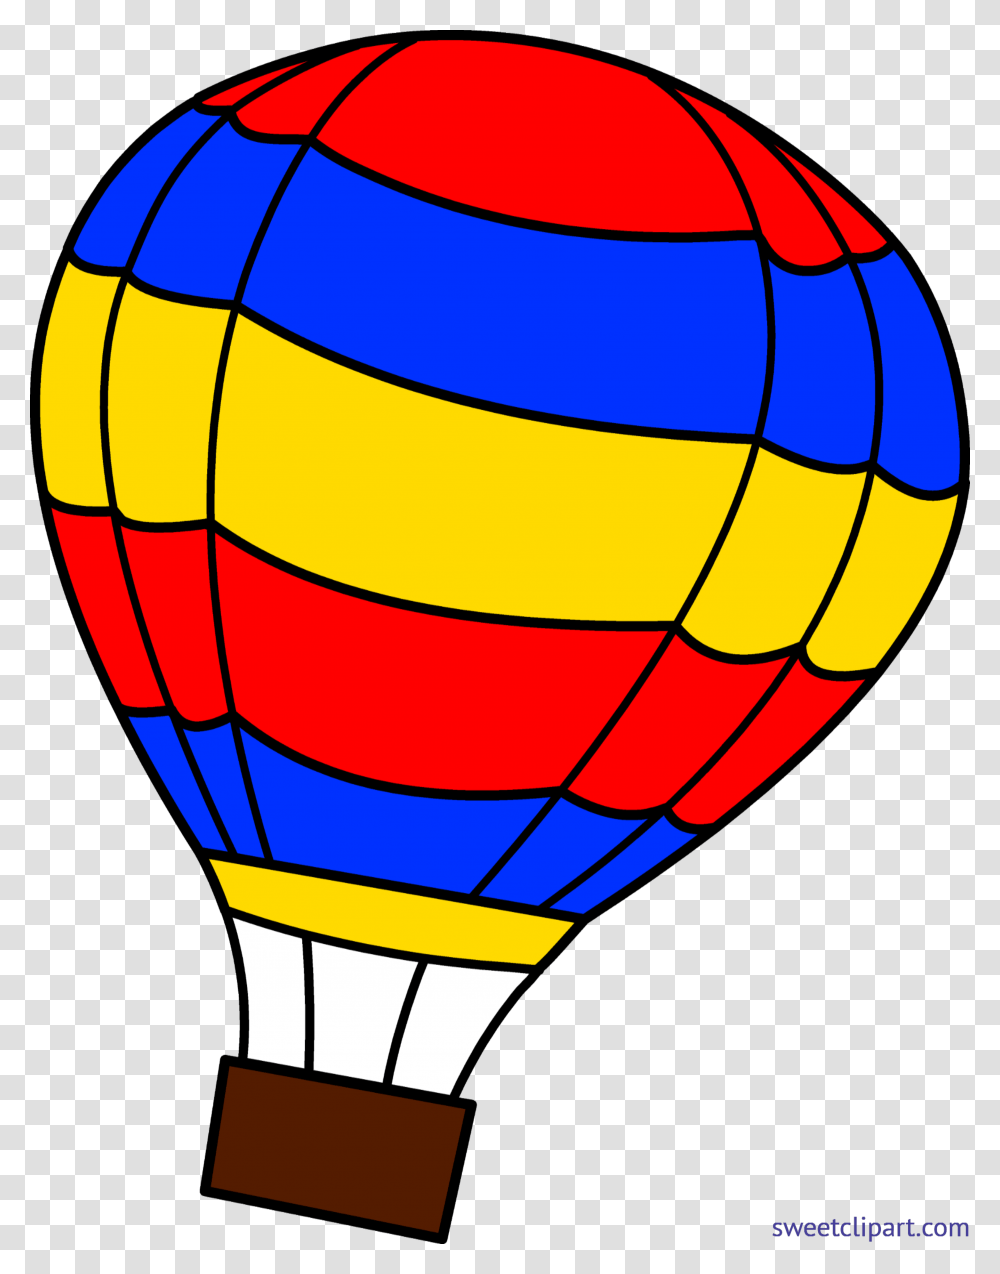 Hot Air Balloon Clip Art, Aircraft, Vehicle, Transportation, Banana Transparent Png